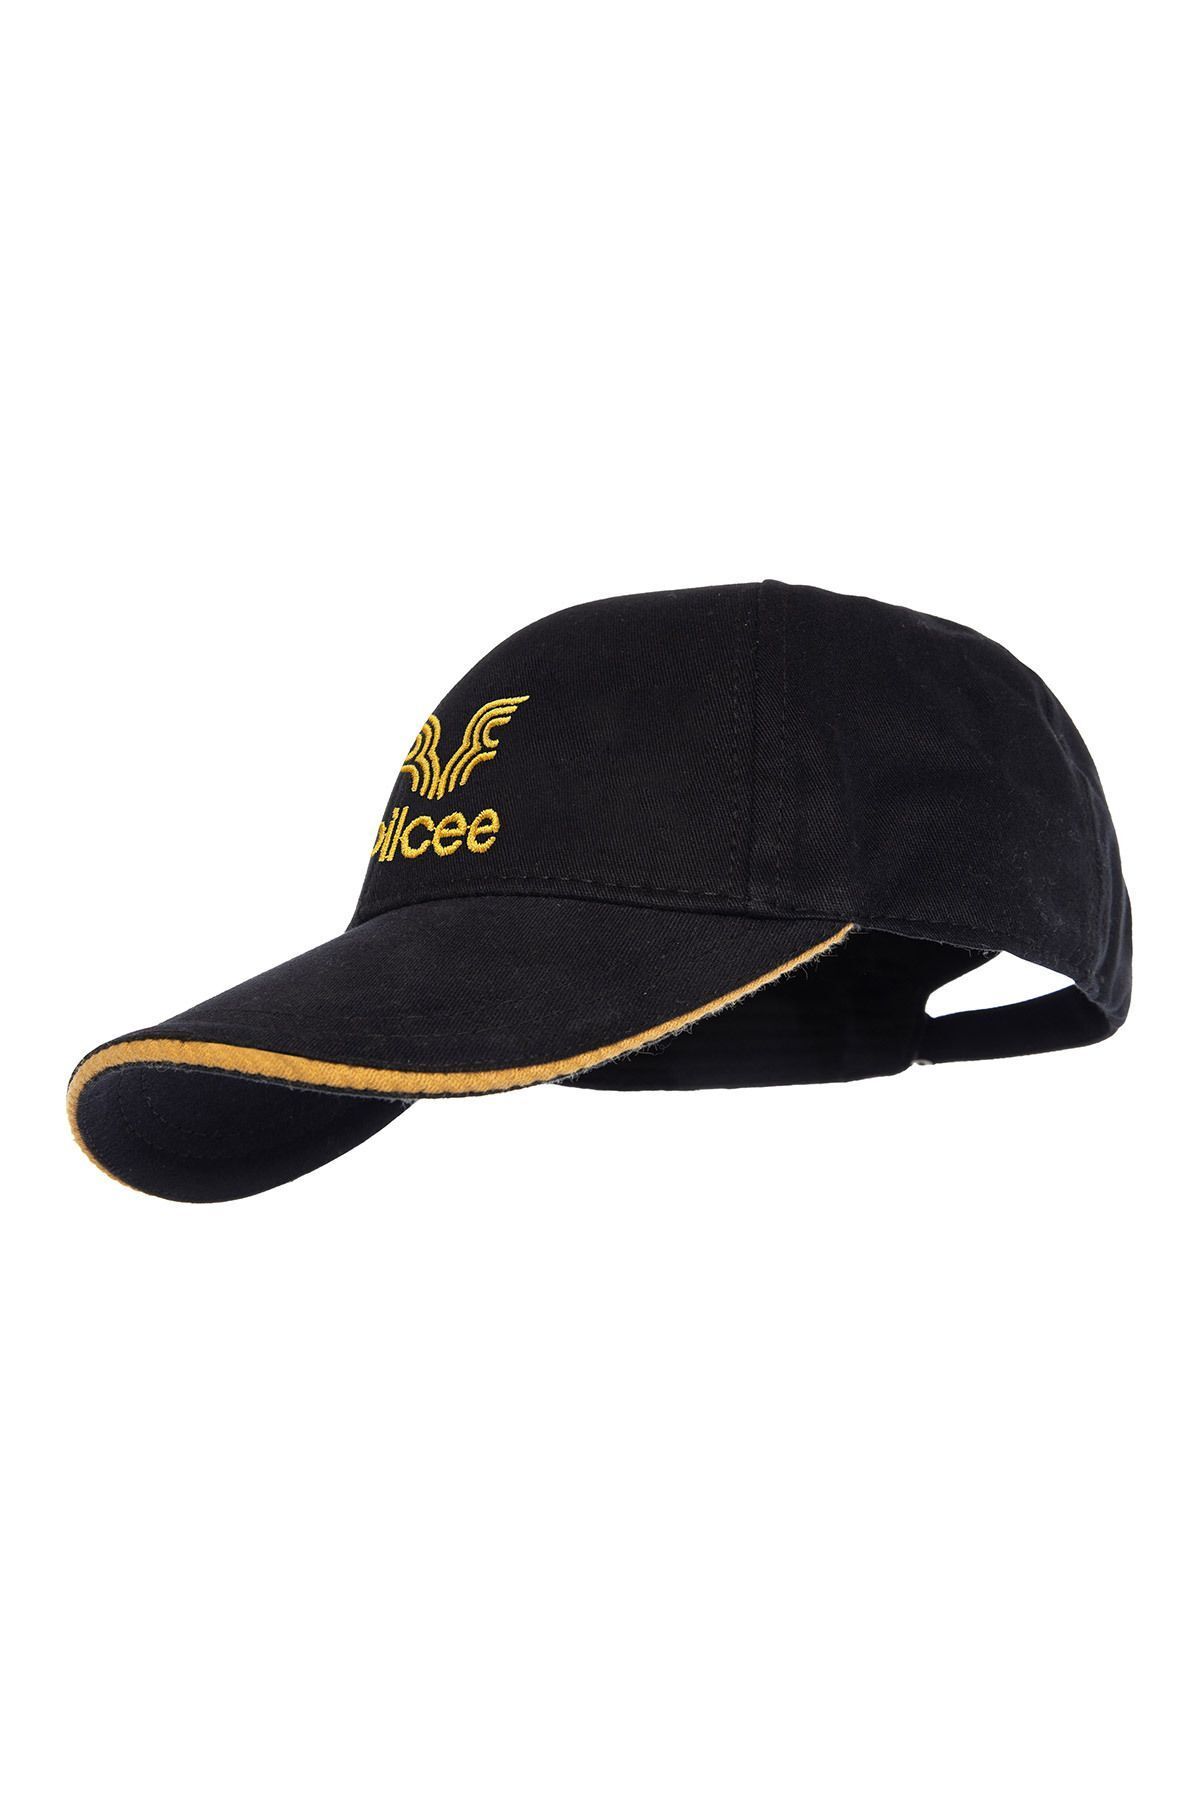 bilcee Unisex Sarı Şeritli Şapka 1591